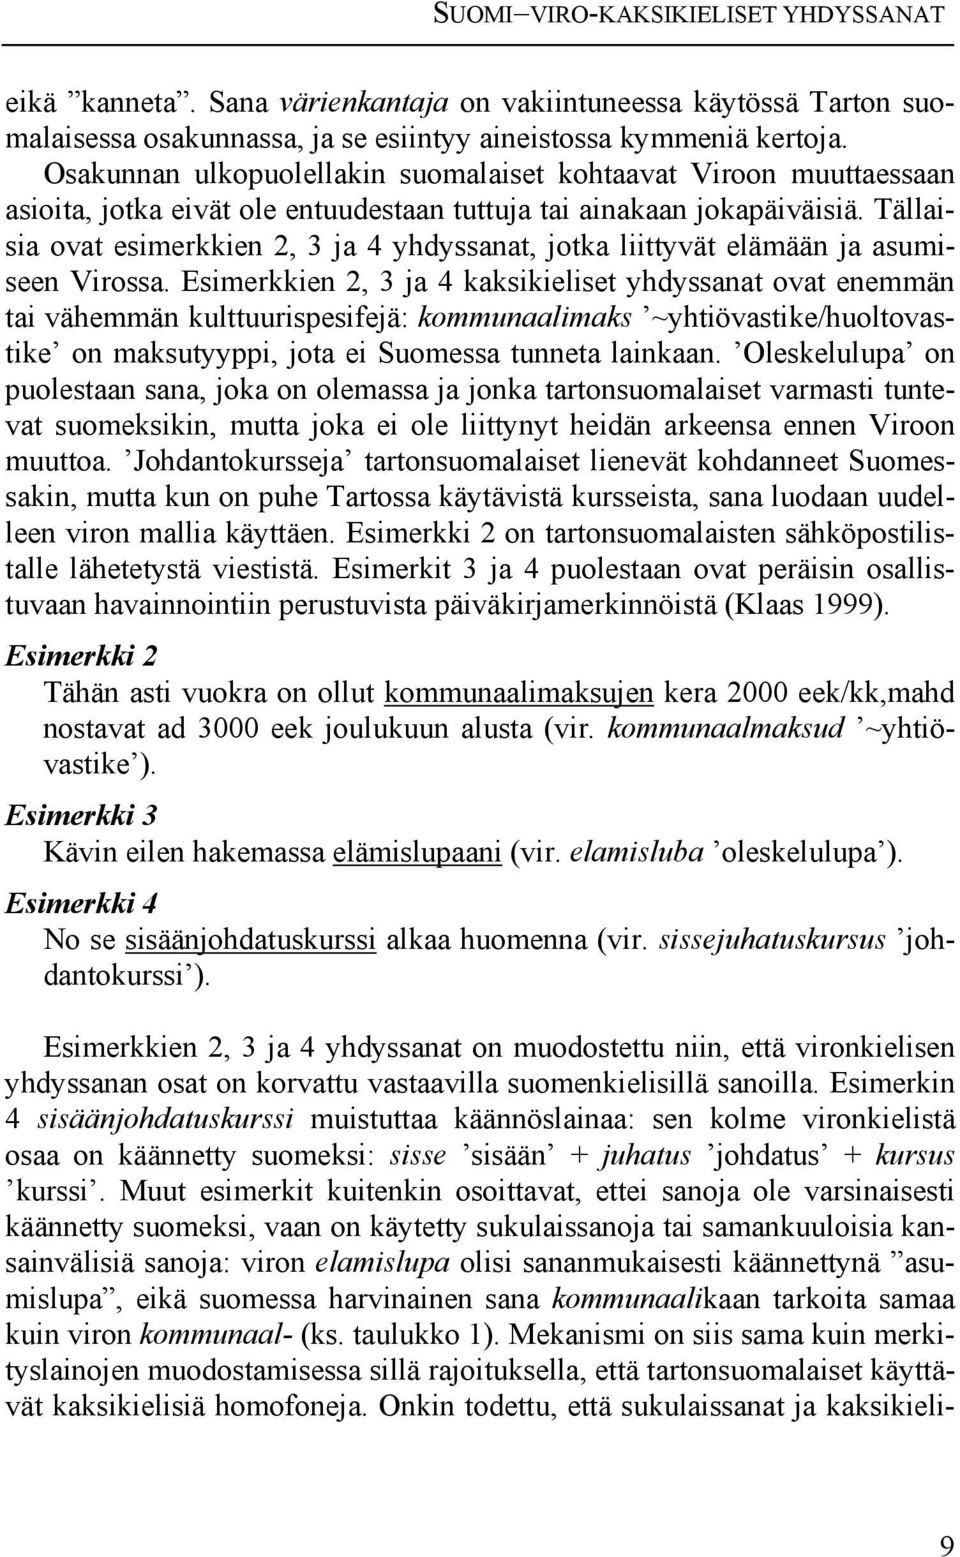 Tällaisia ovat esimerkkien 2, 3 ja 4 yhdyssanat, jotka liittyvät elämään ja asumiseen Virossa.